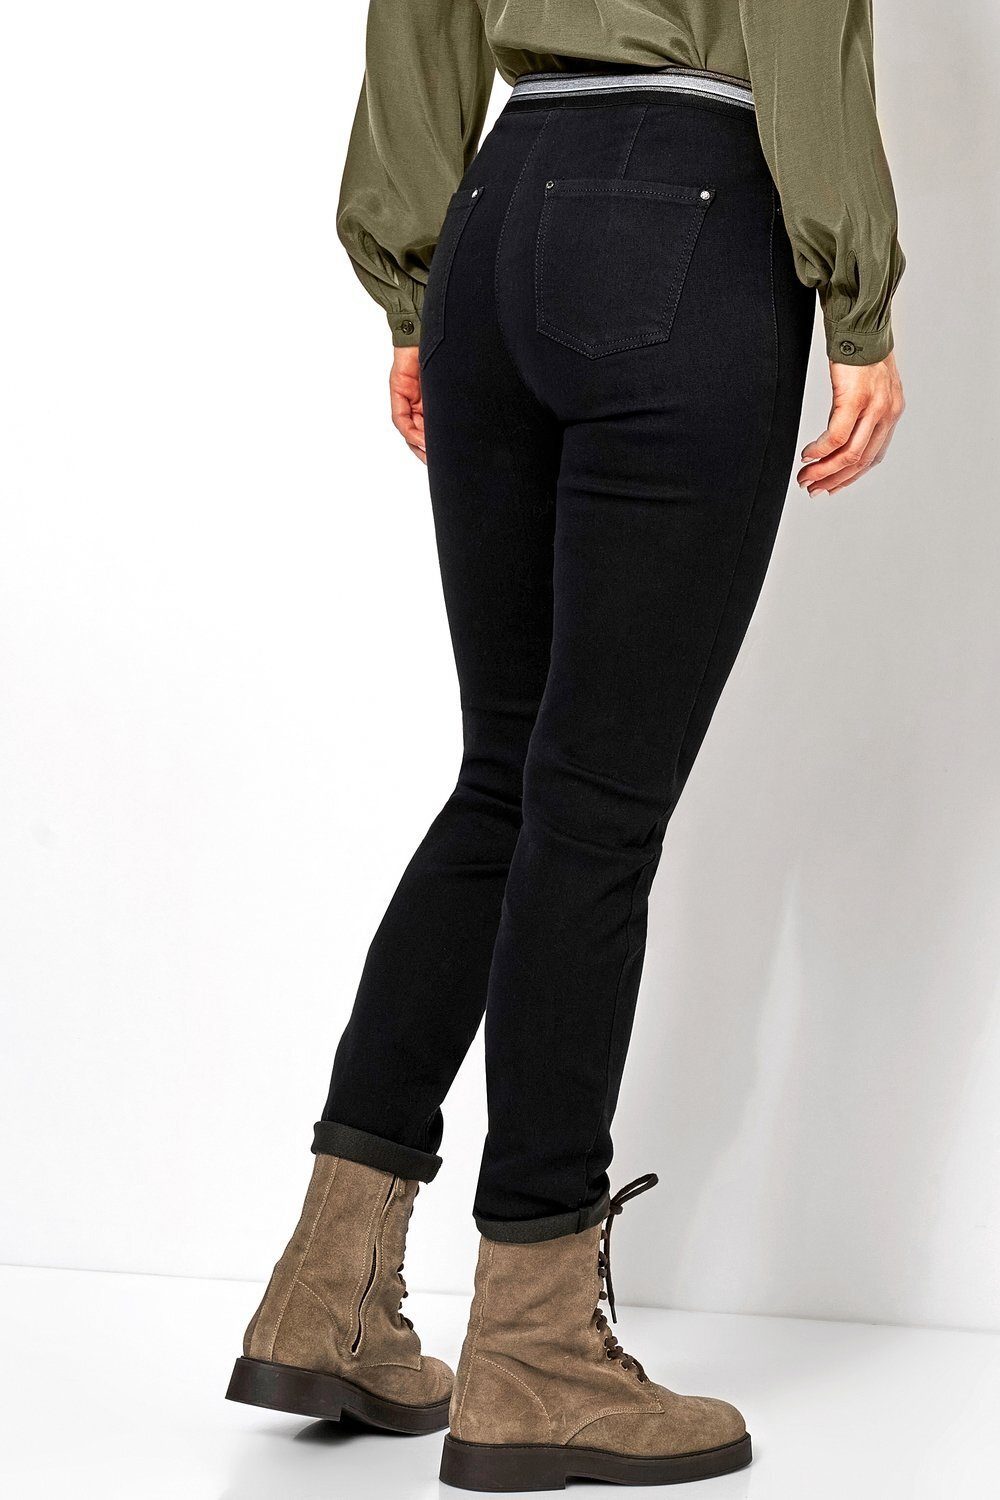 Jenny 089 schwarz mit gestreiftem Ankle-Jeans - TONI Gummizug